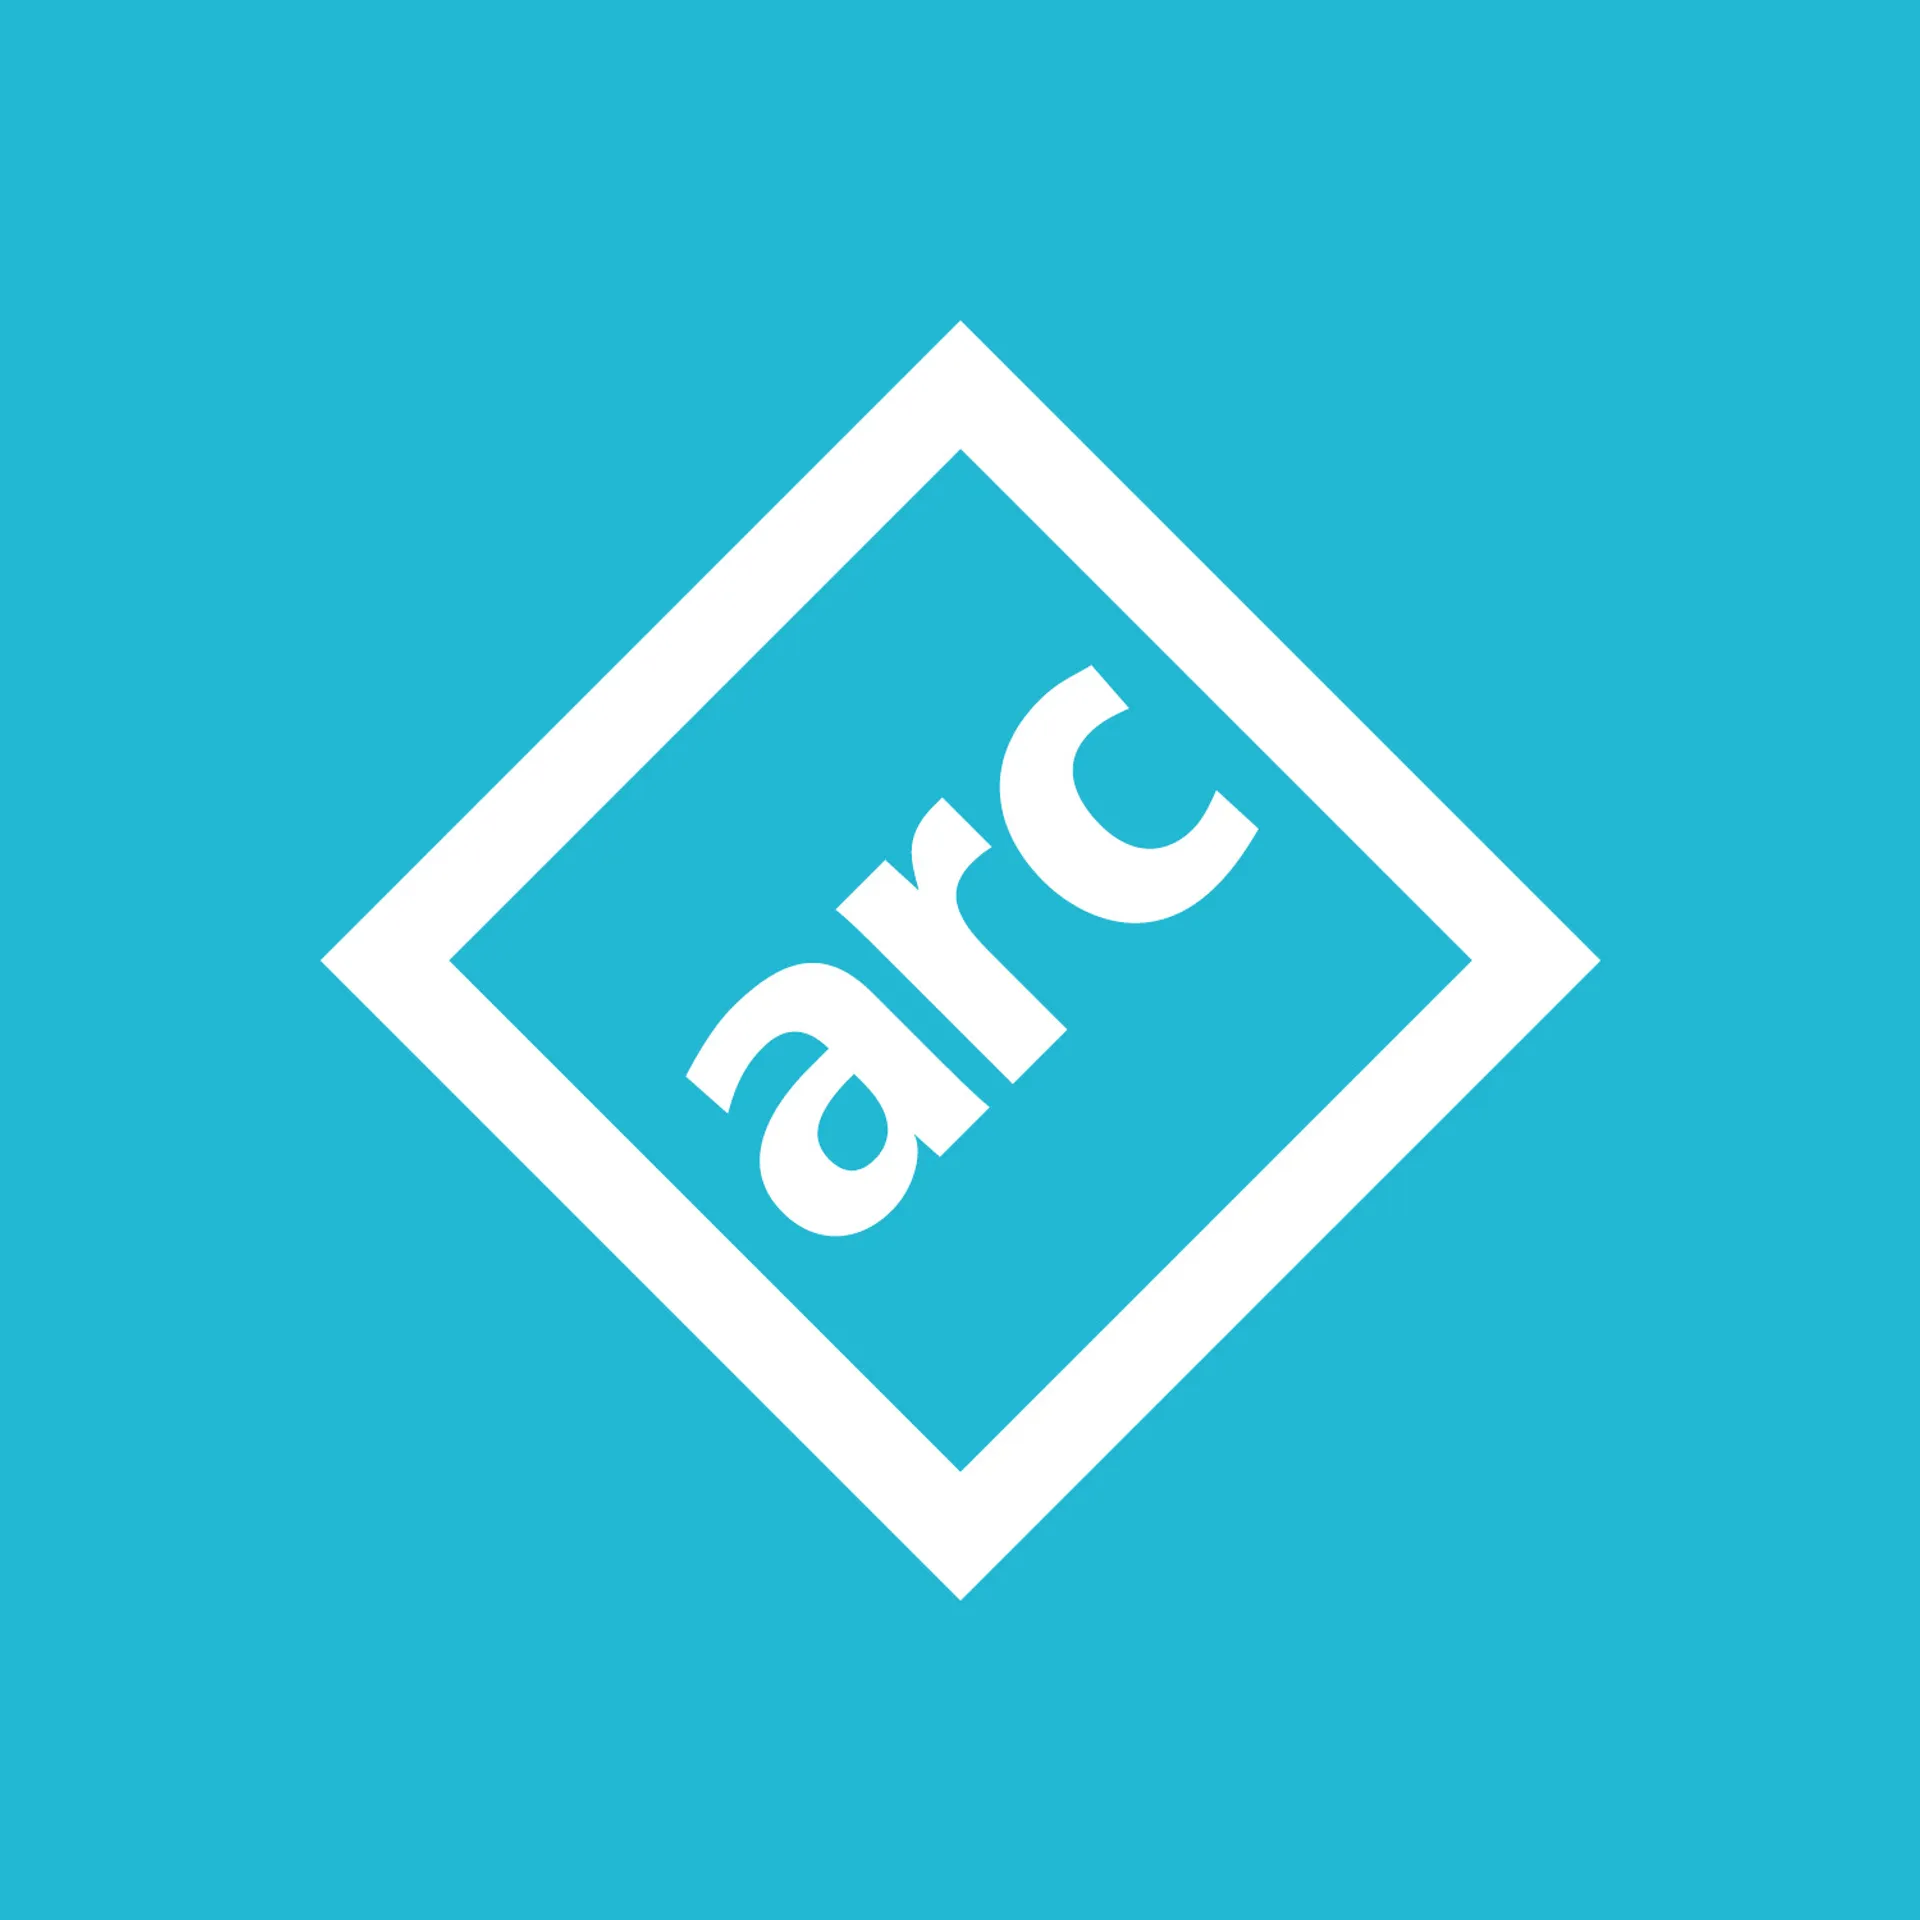 ARC Logo on blue background